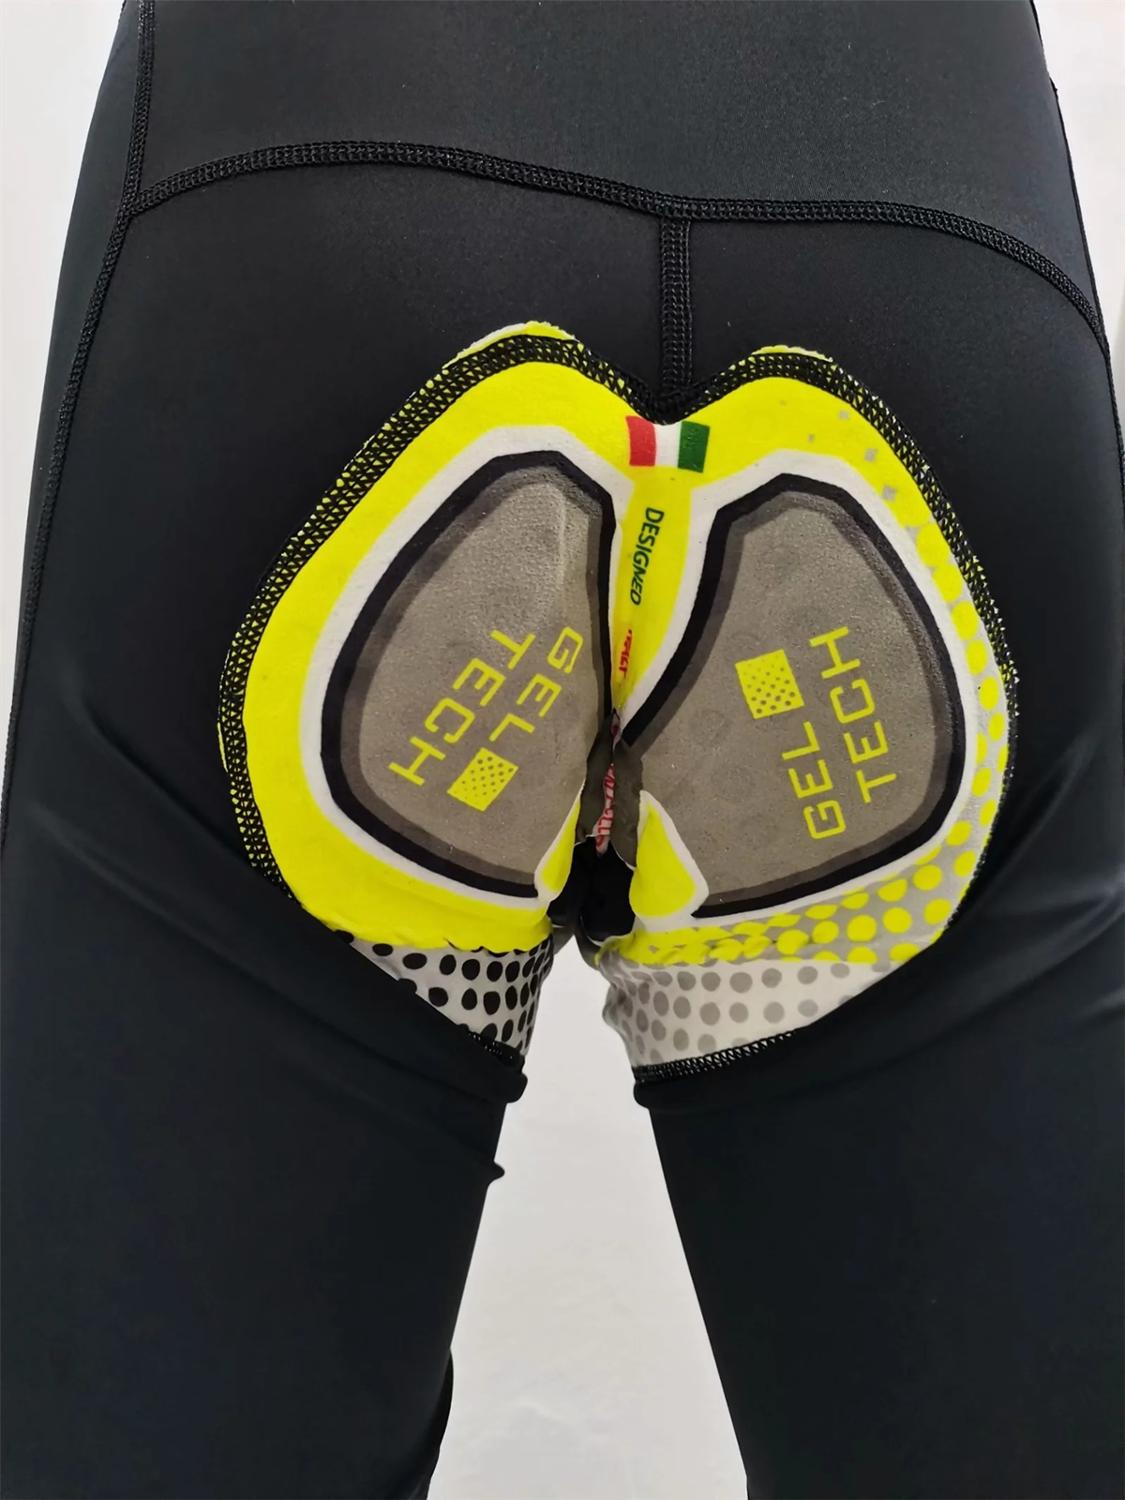 Herrecycling bib shorts lycra stof upf 50 ben syning italiensk bælte 4.0 gel pad til lang tid ride